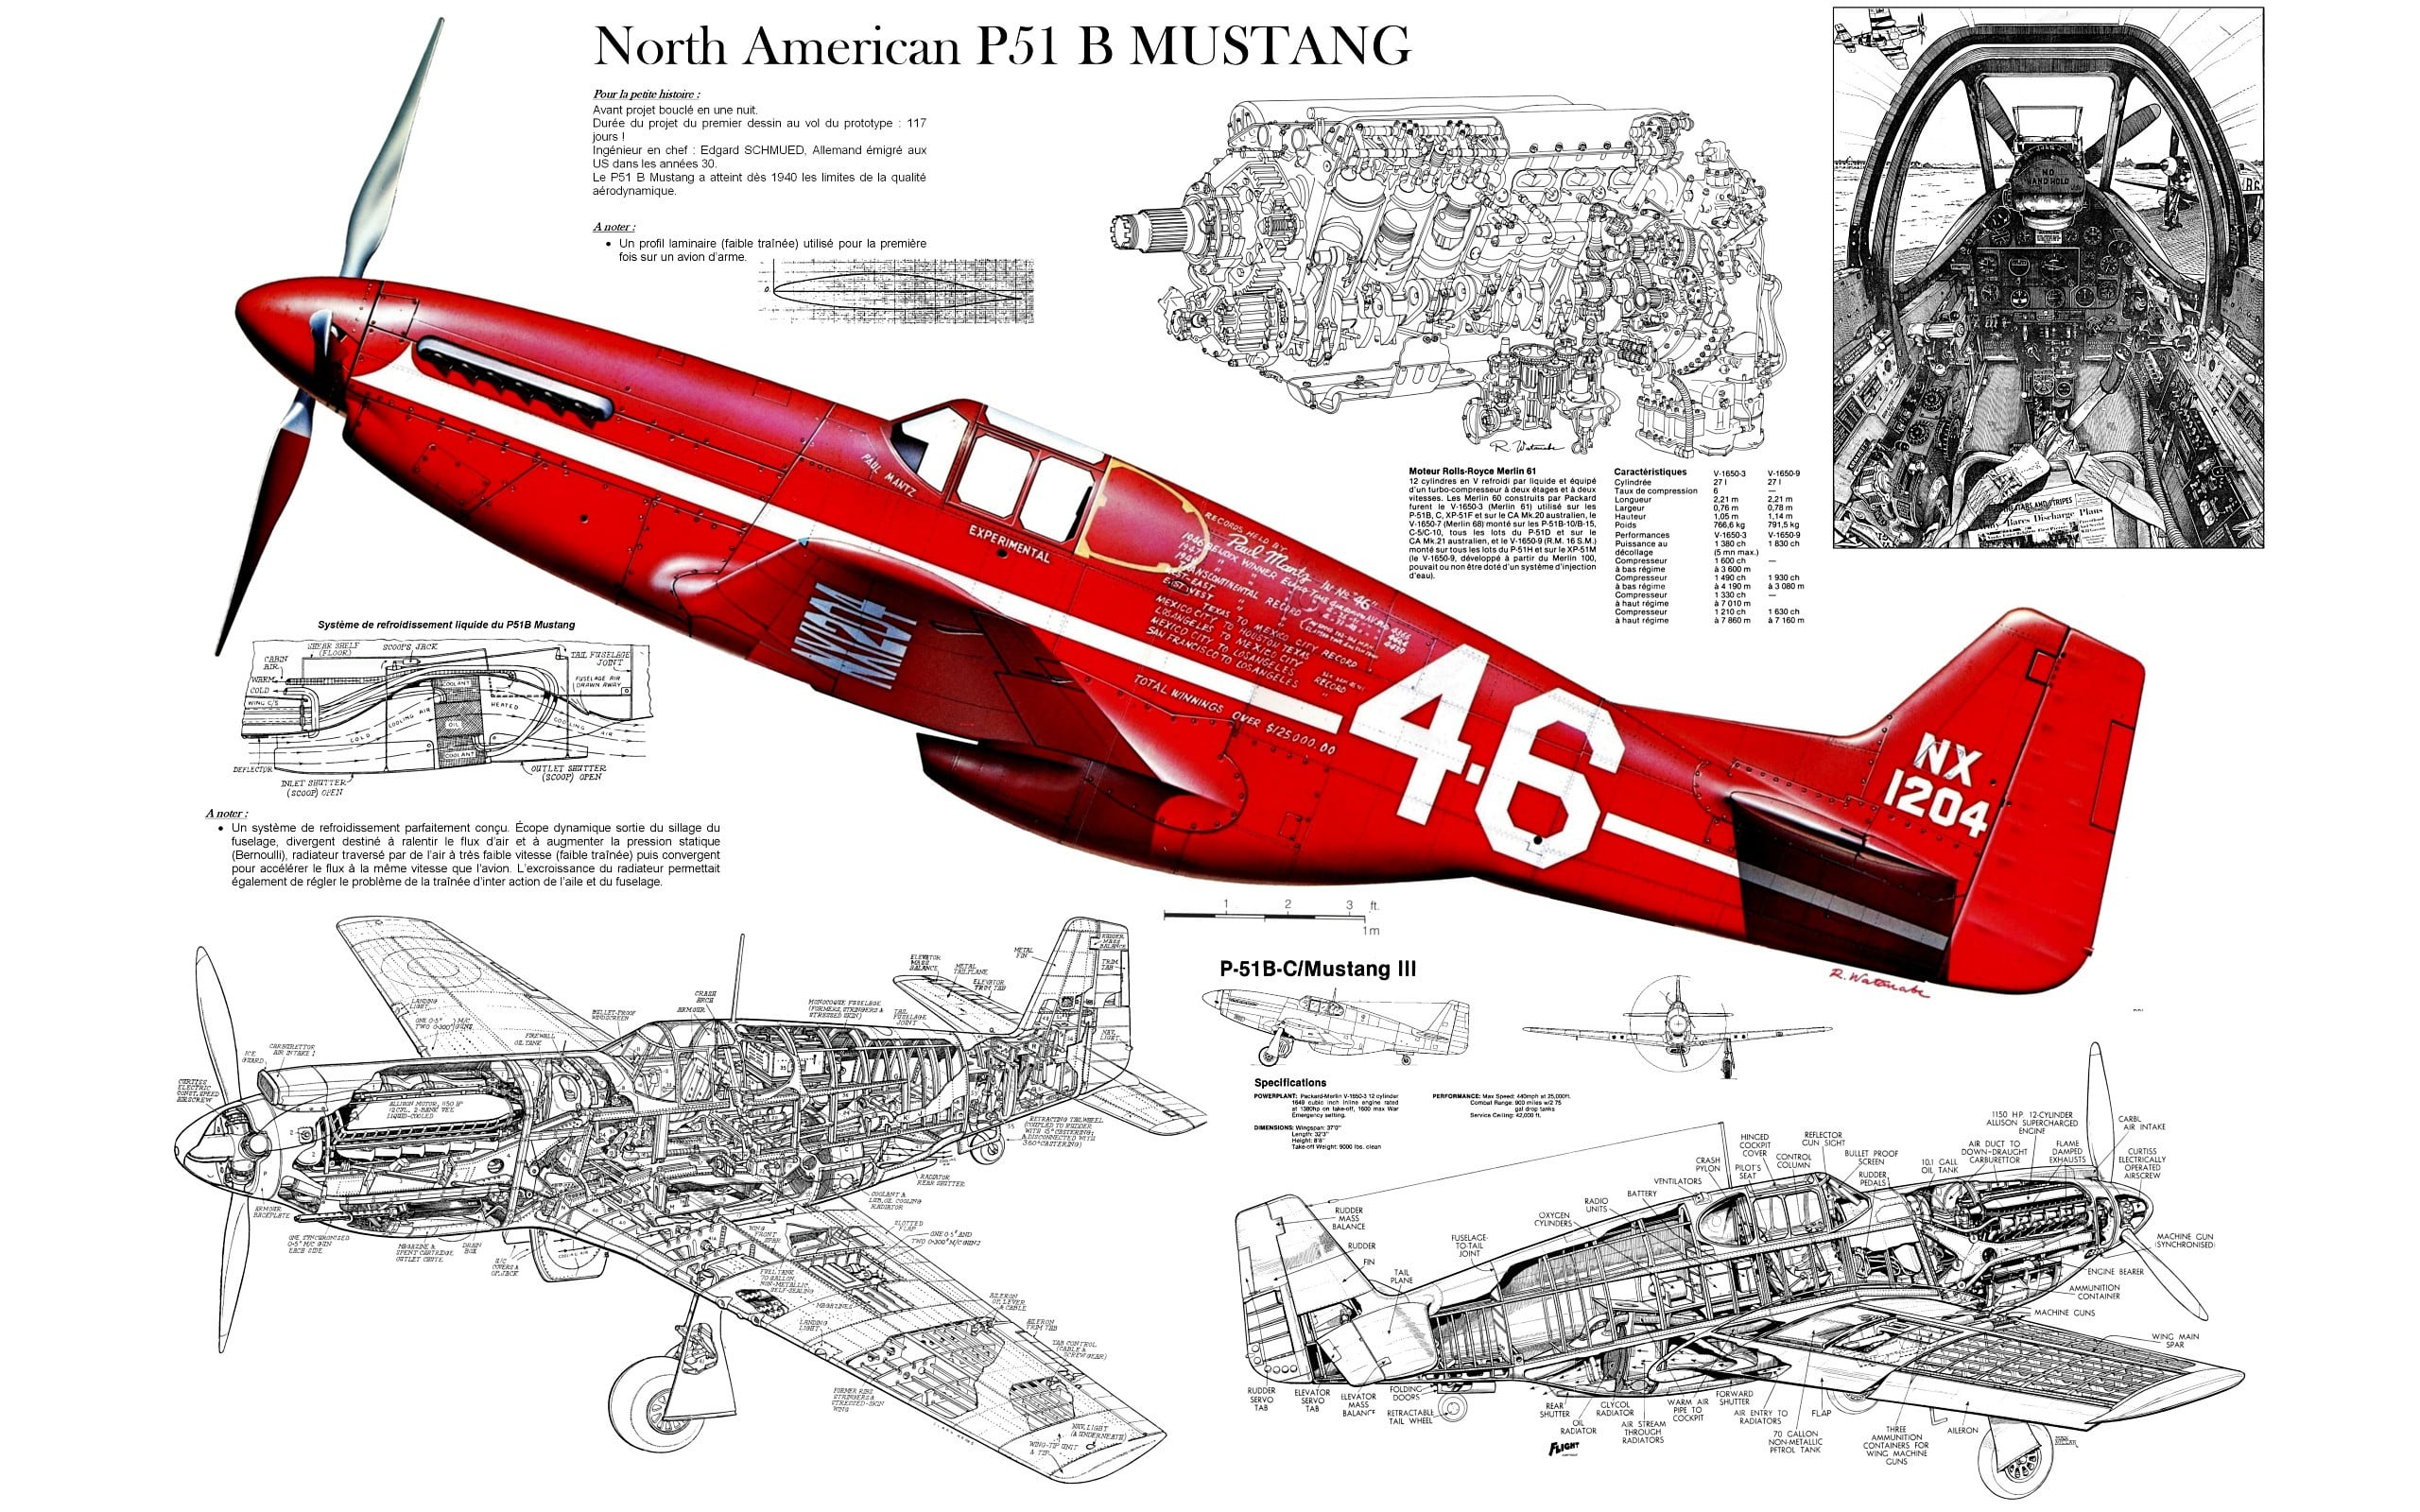 red North American P51 B Mustang, digital art, North American P-51 Mustang